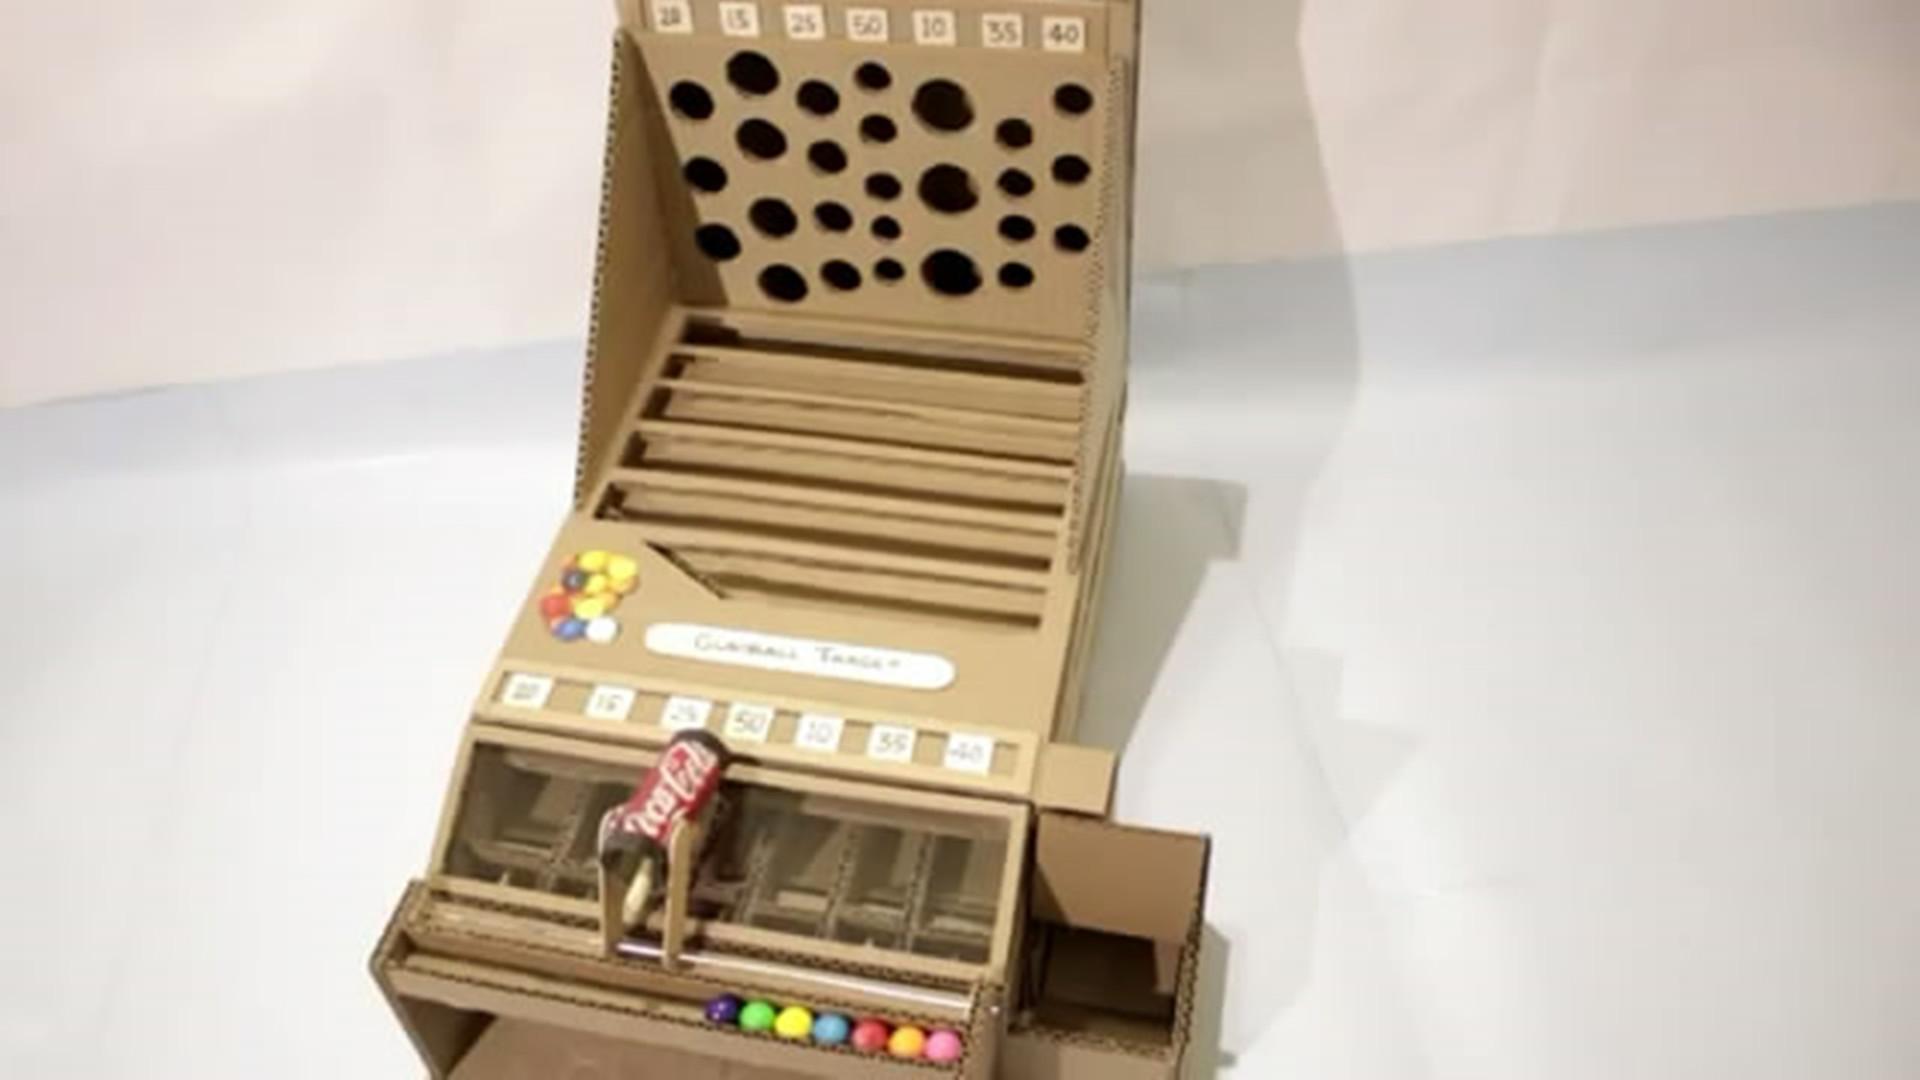 牛人教你用纸板制作糖果游戏机,没事玩两下,太好玩了